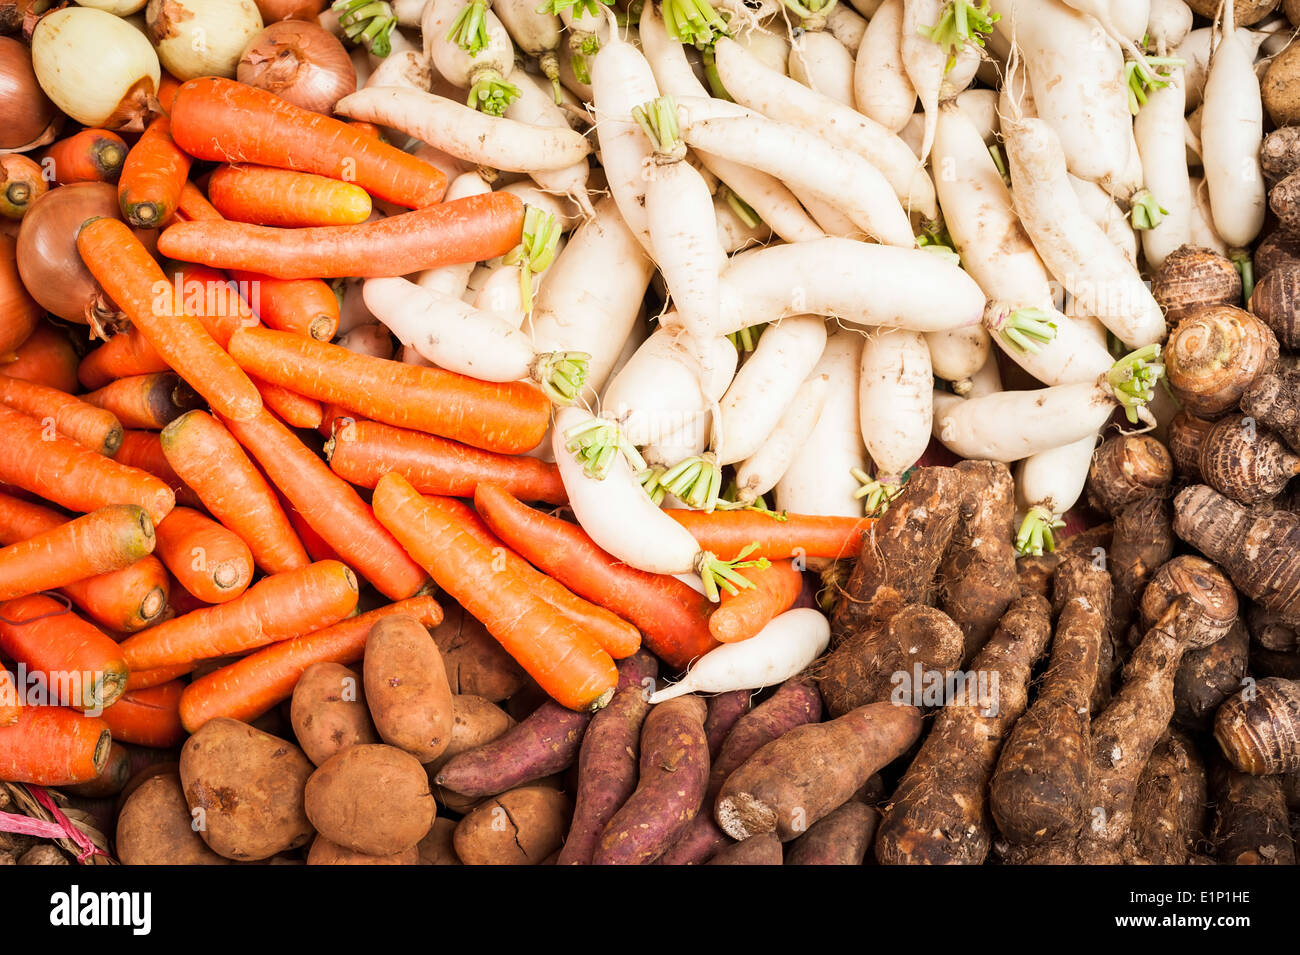 Les fruits et légumes frais biologiques au marché des aliments asiatiques Banque D'Images